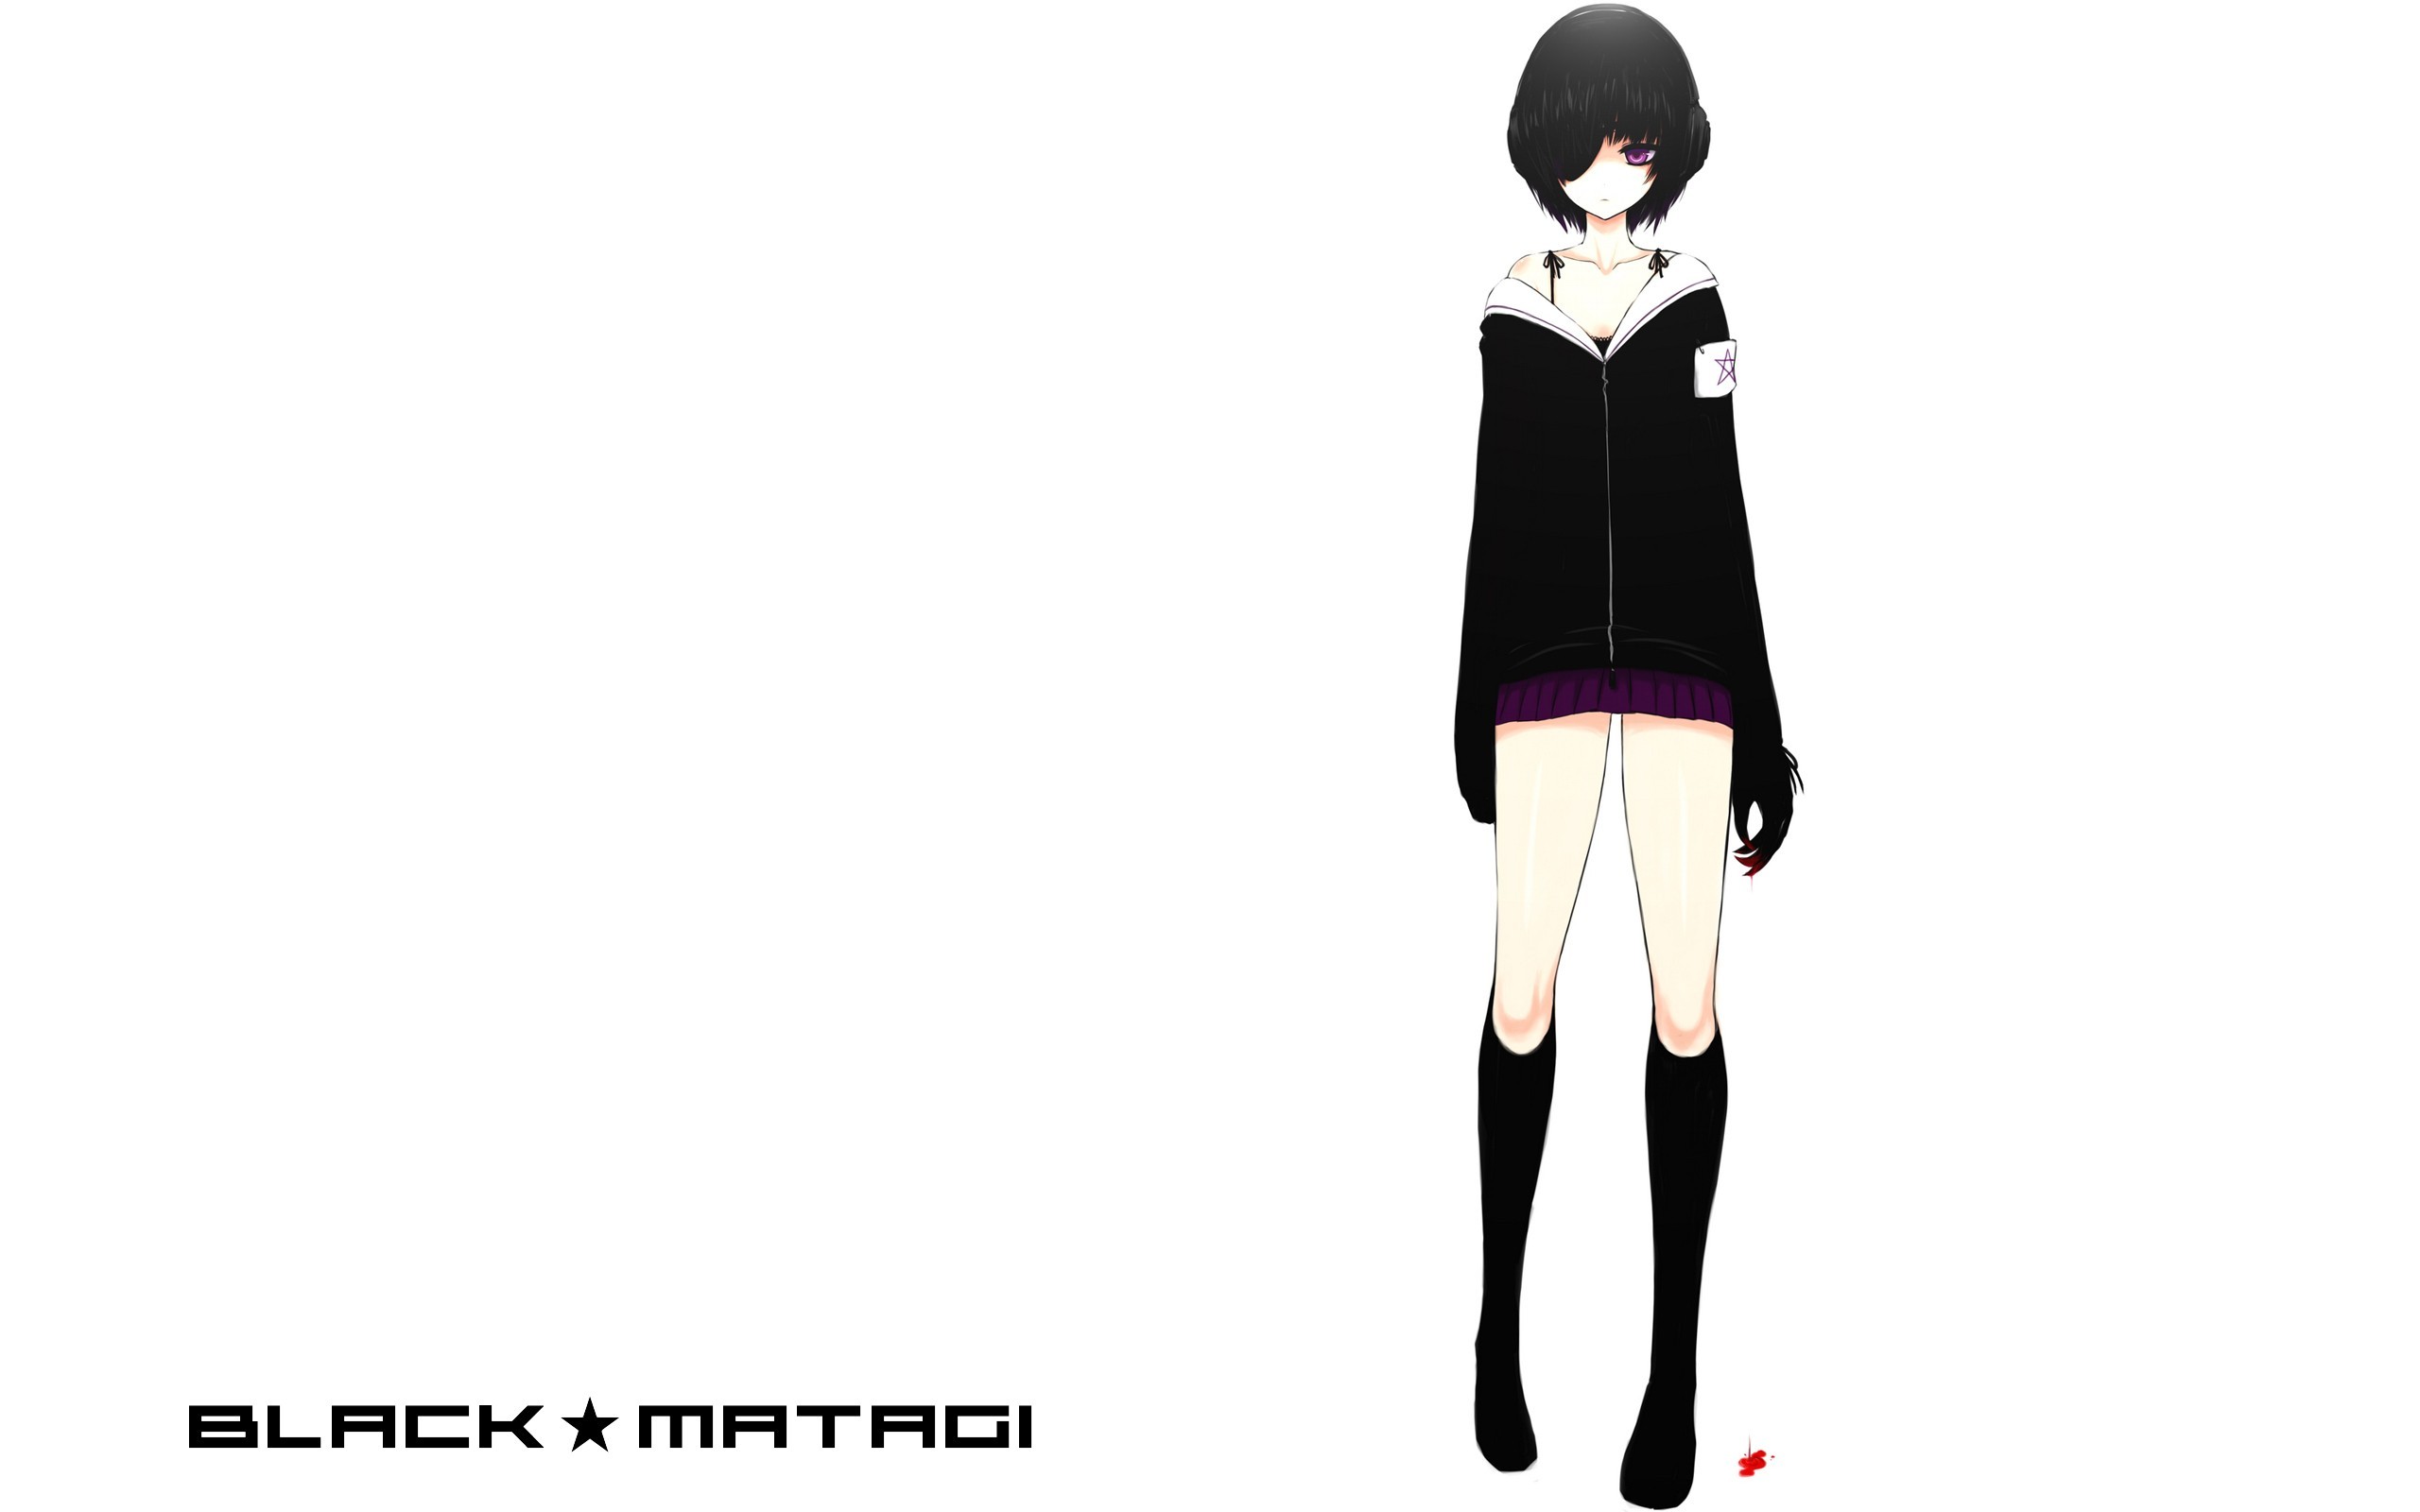 Anime 2560x1600 Black Rock Shooter anime girls Black Matagi legs simple background white background dark hair purple eyes hair over one eye women standing anime